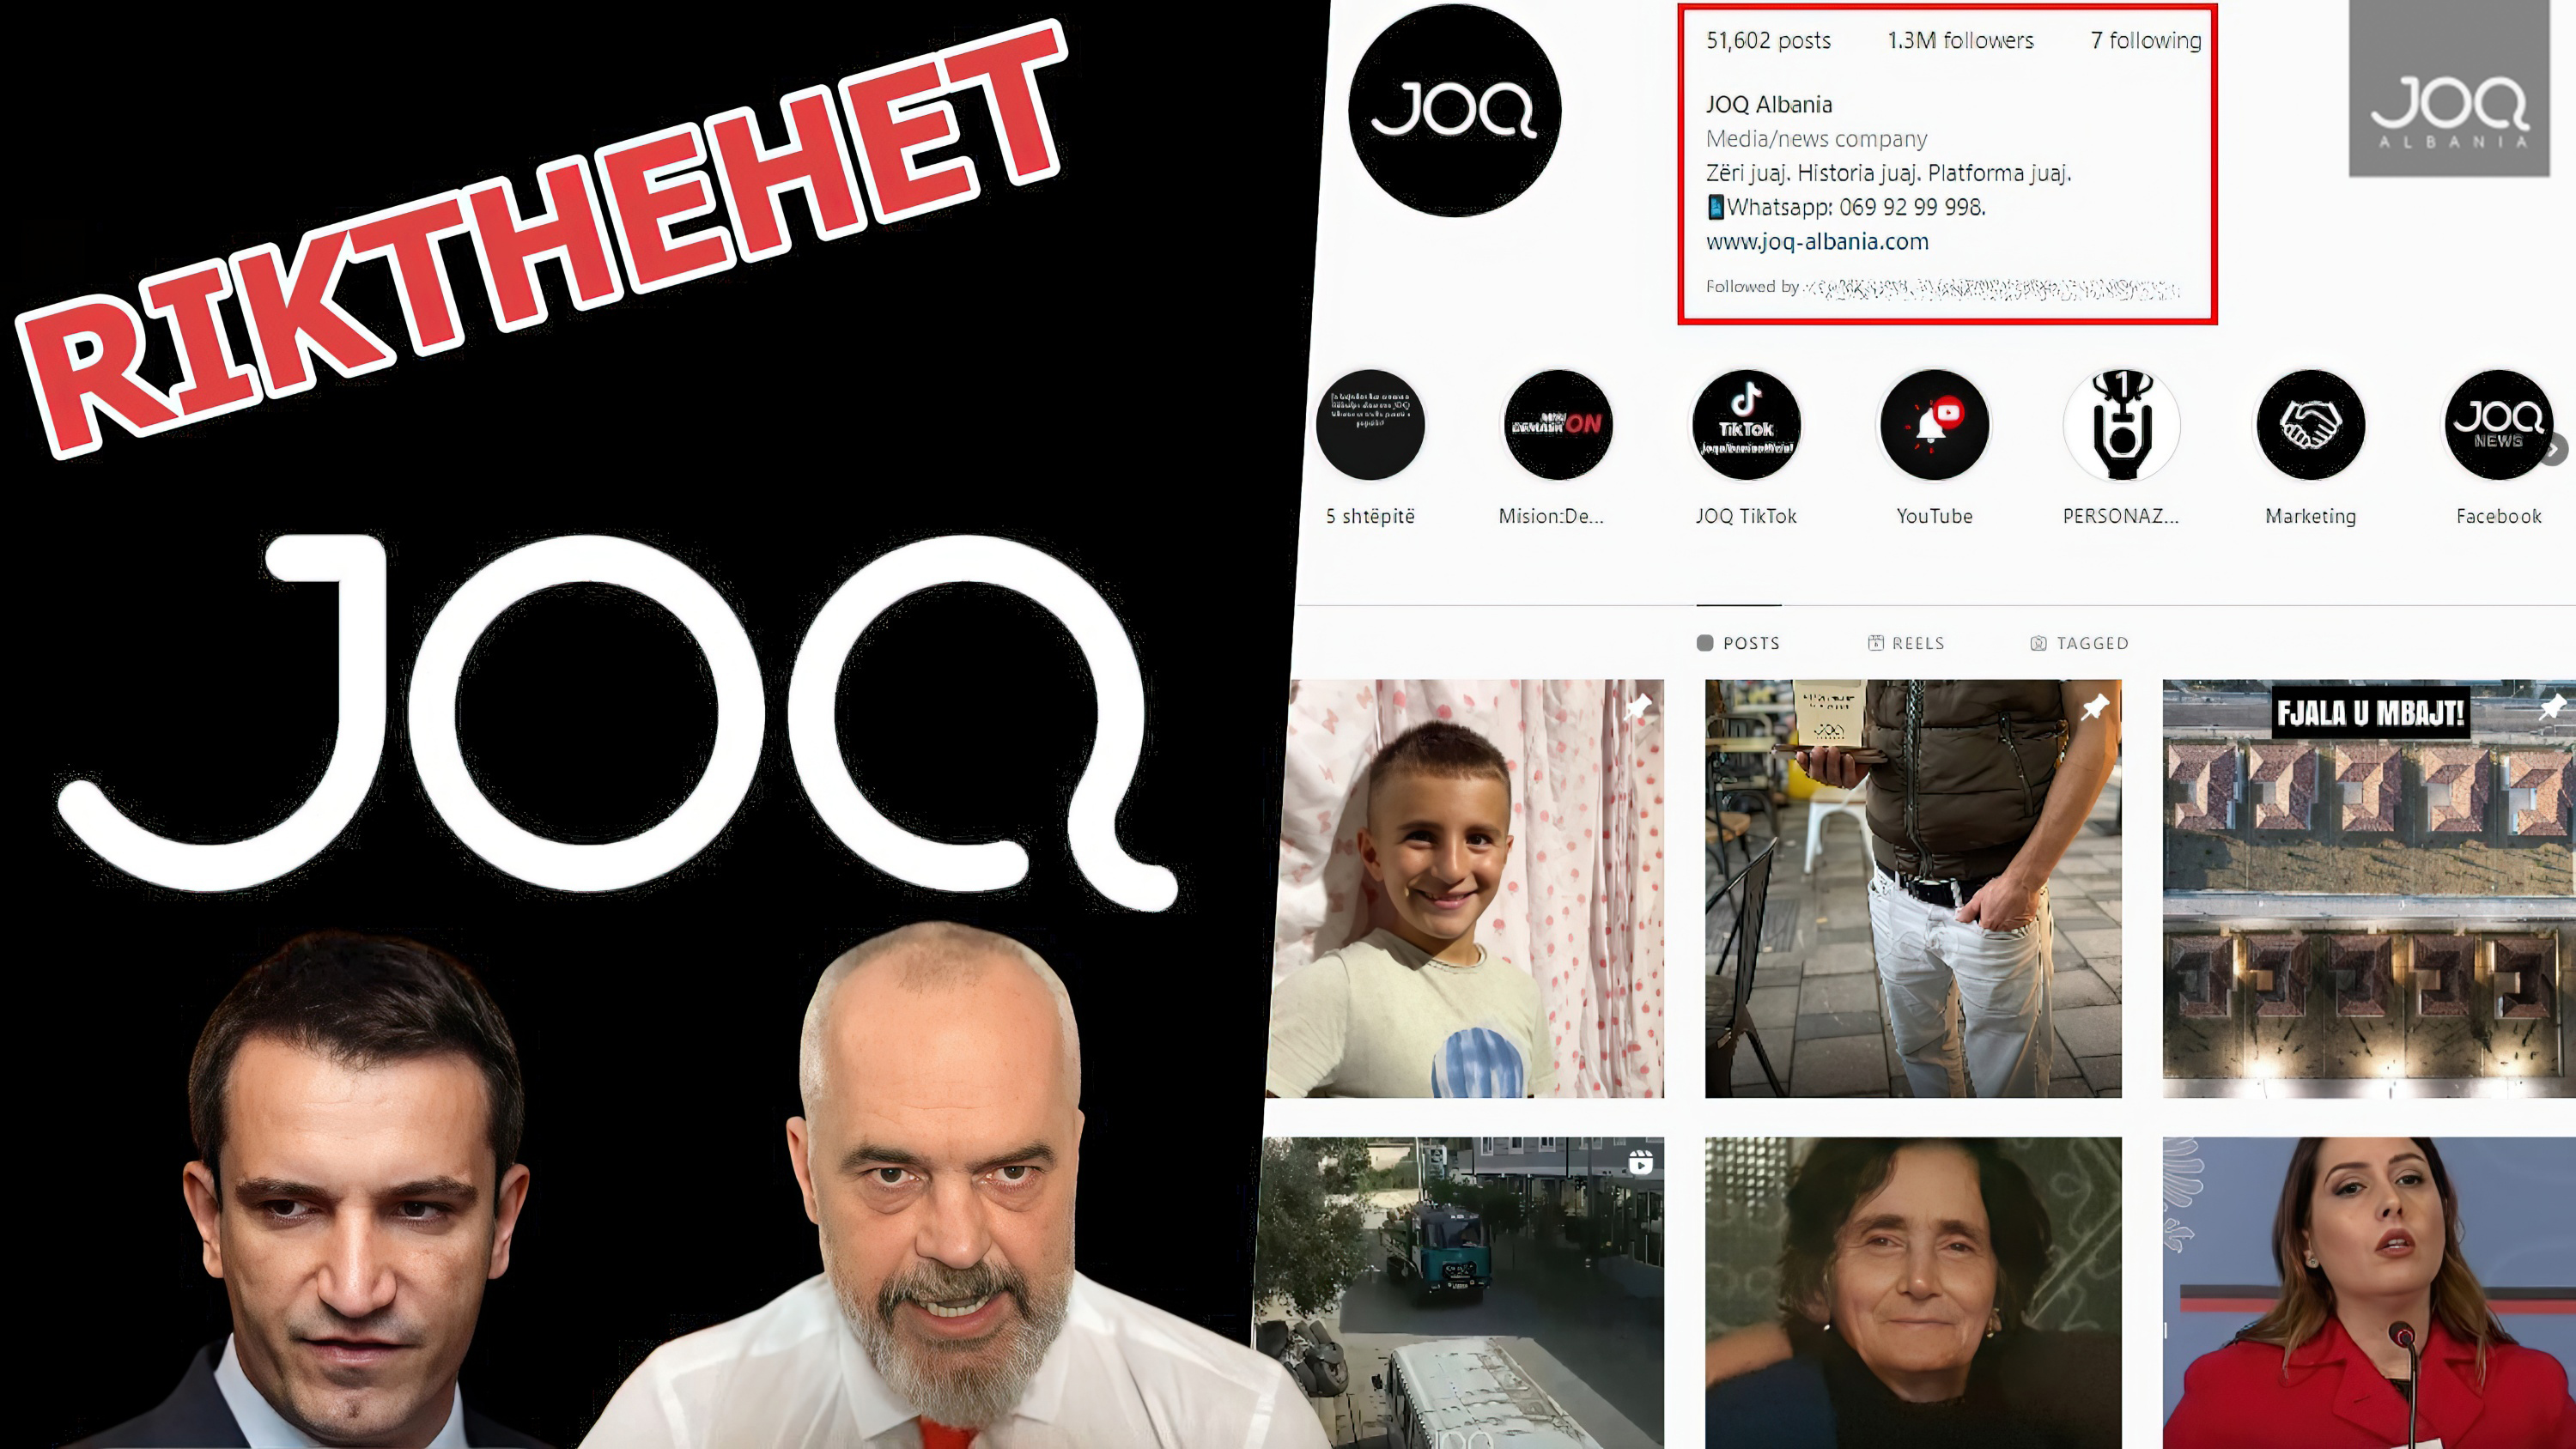 Rikthehet instagrami i JOQ ALBANIA me 1.3 MLN shqiptarë